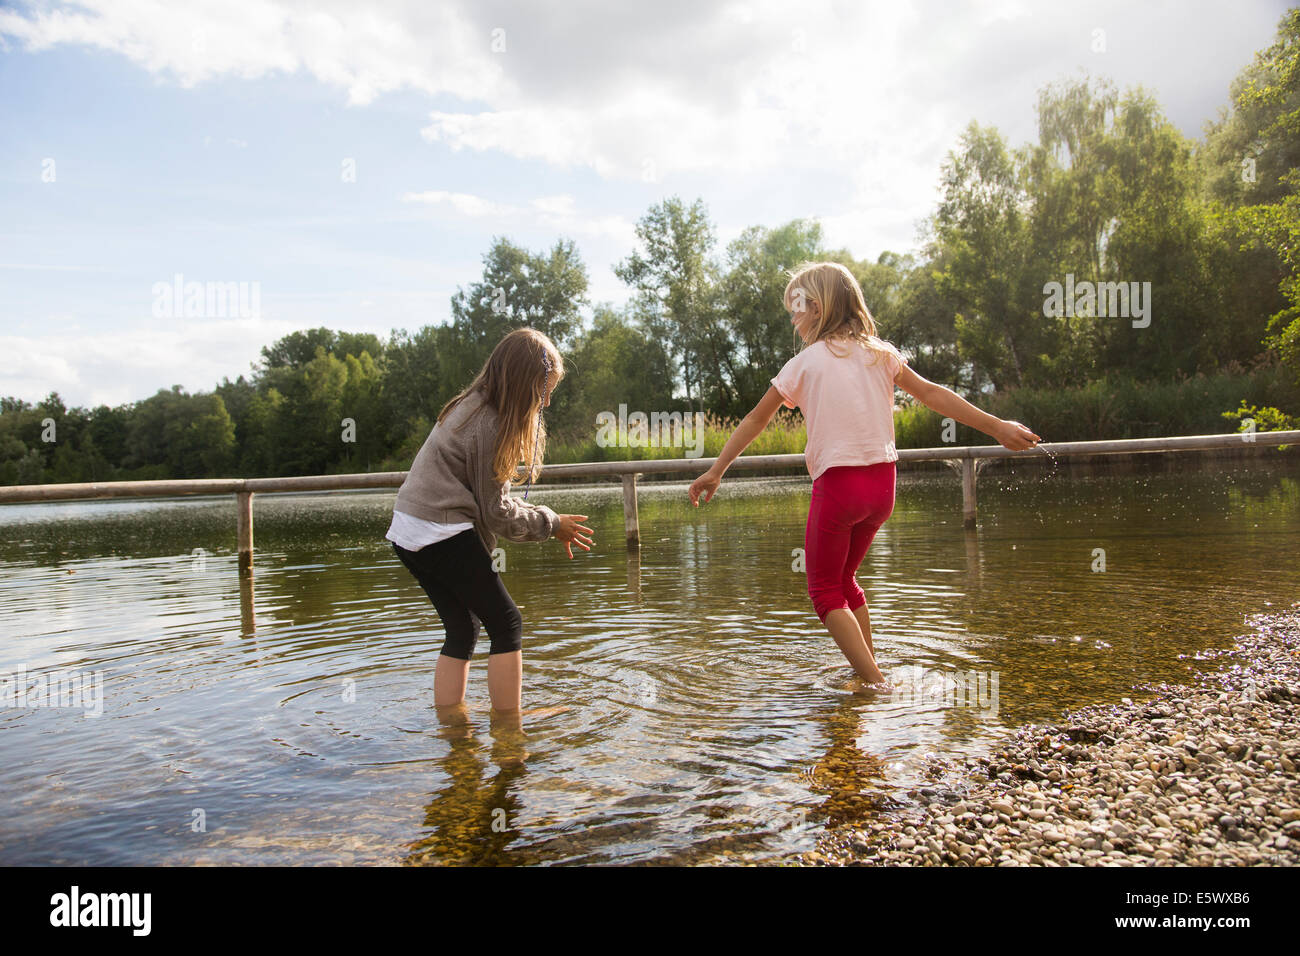 Deux jeunes filles dans le lac de canotage Banque D'Images